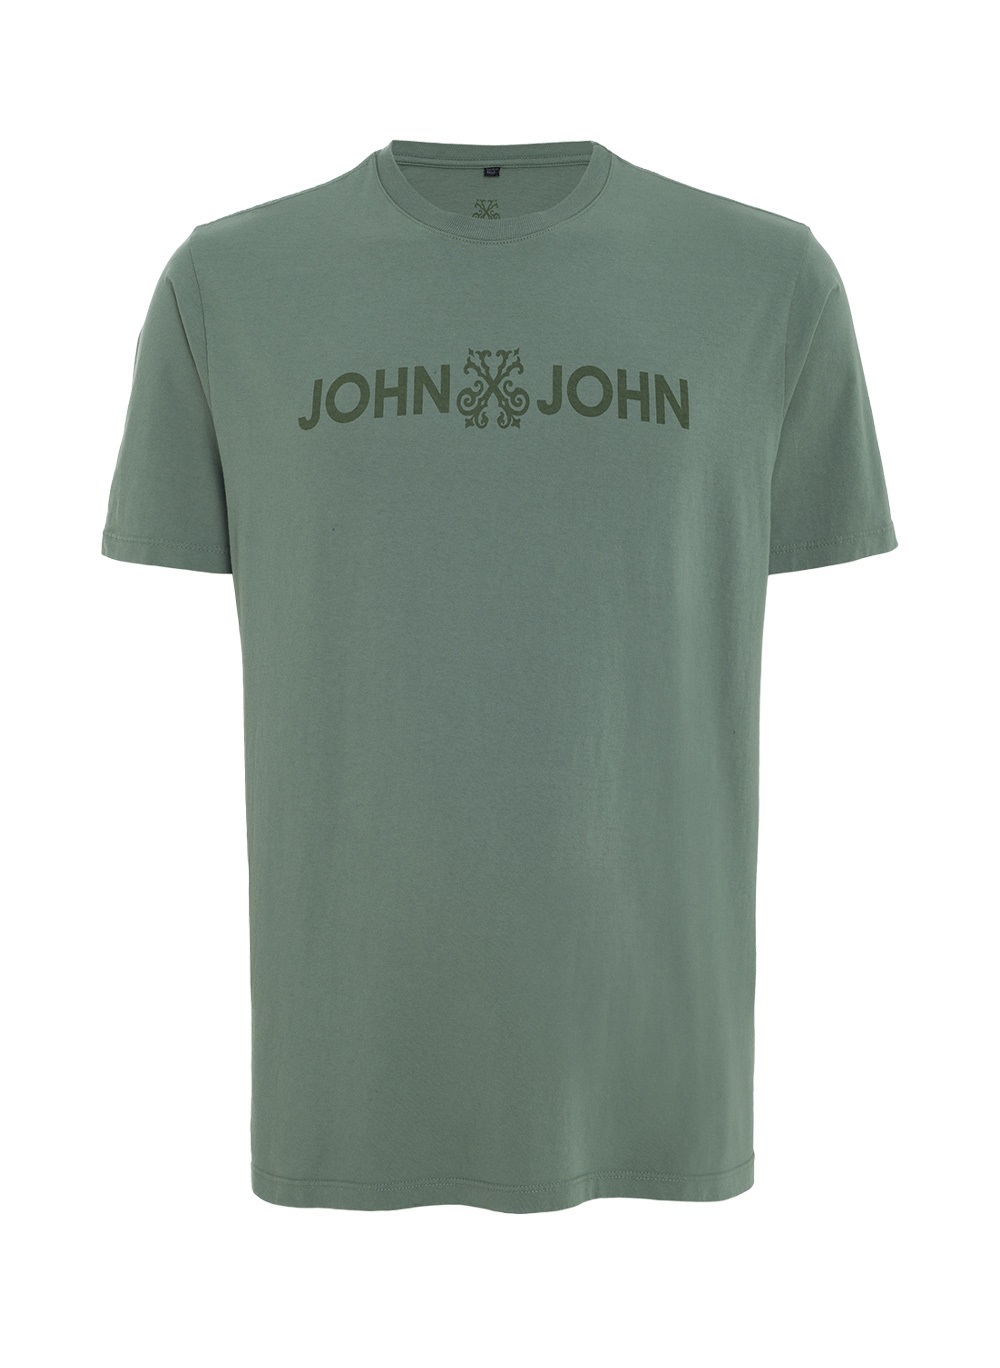 Camiseta John John Masculina Summer 67 Verde Claro